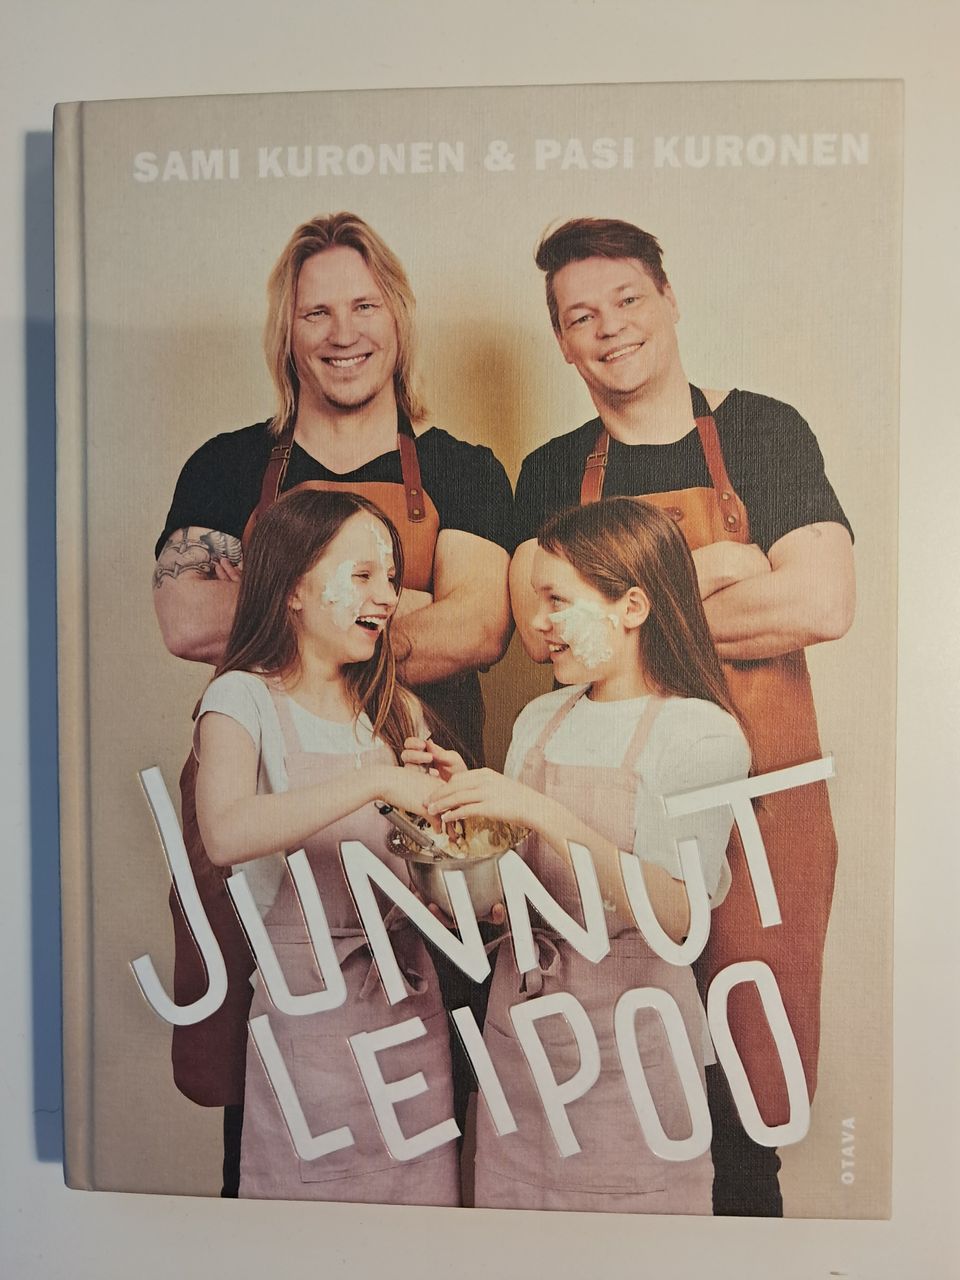 Sami Kuronen & Pasi Kuronen: Junnut leipoo